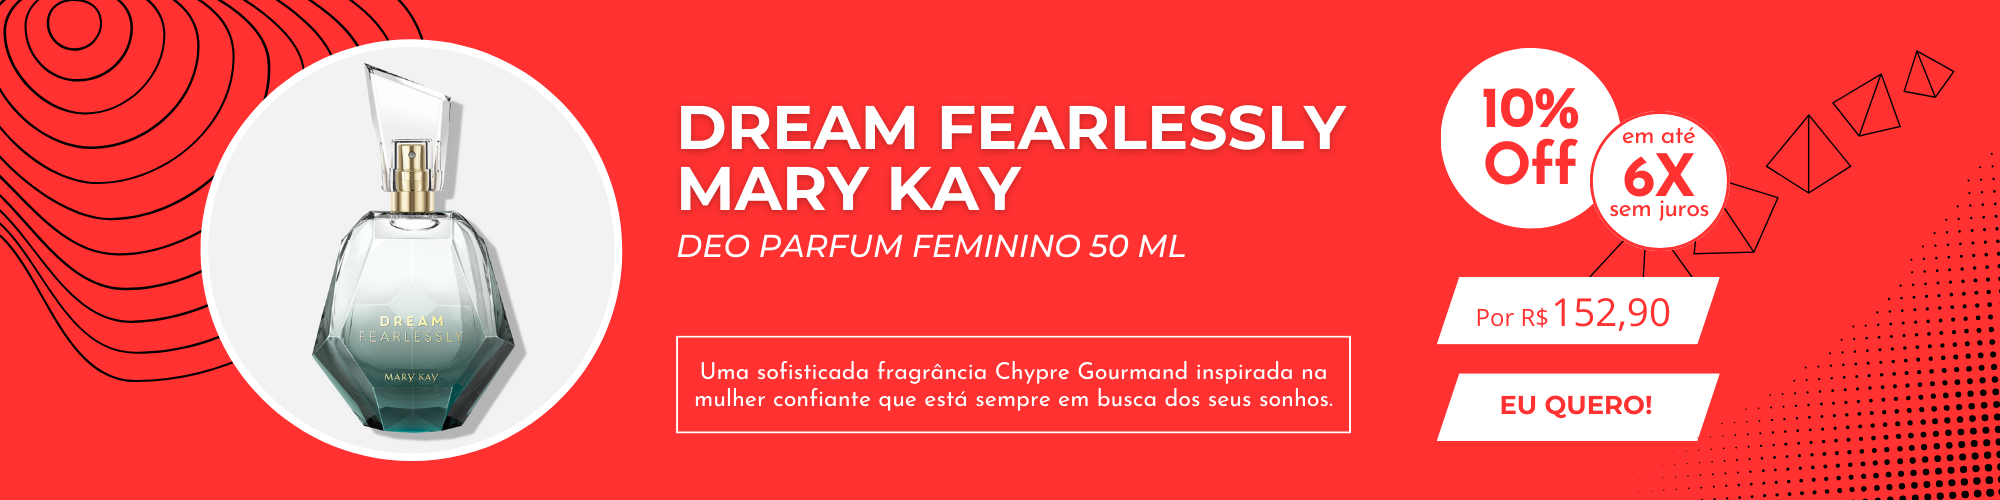 Dream Fearlessly Mary Kay Deo Parfum Feminino 50 ml